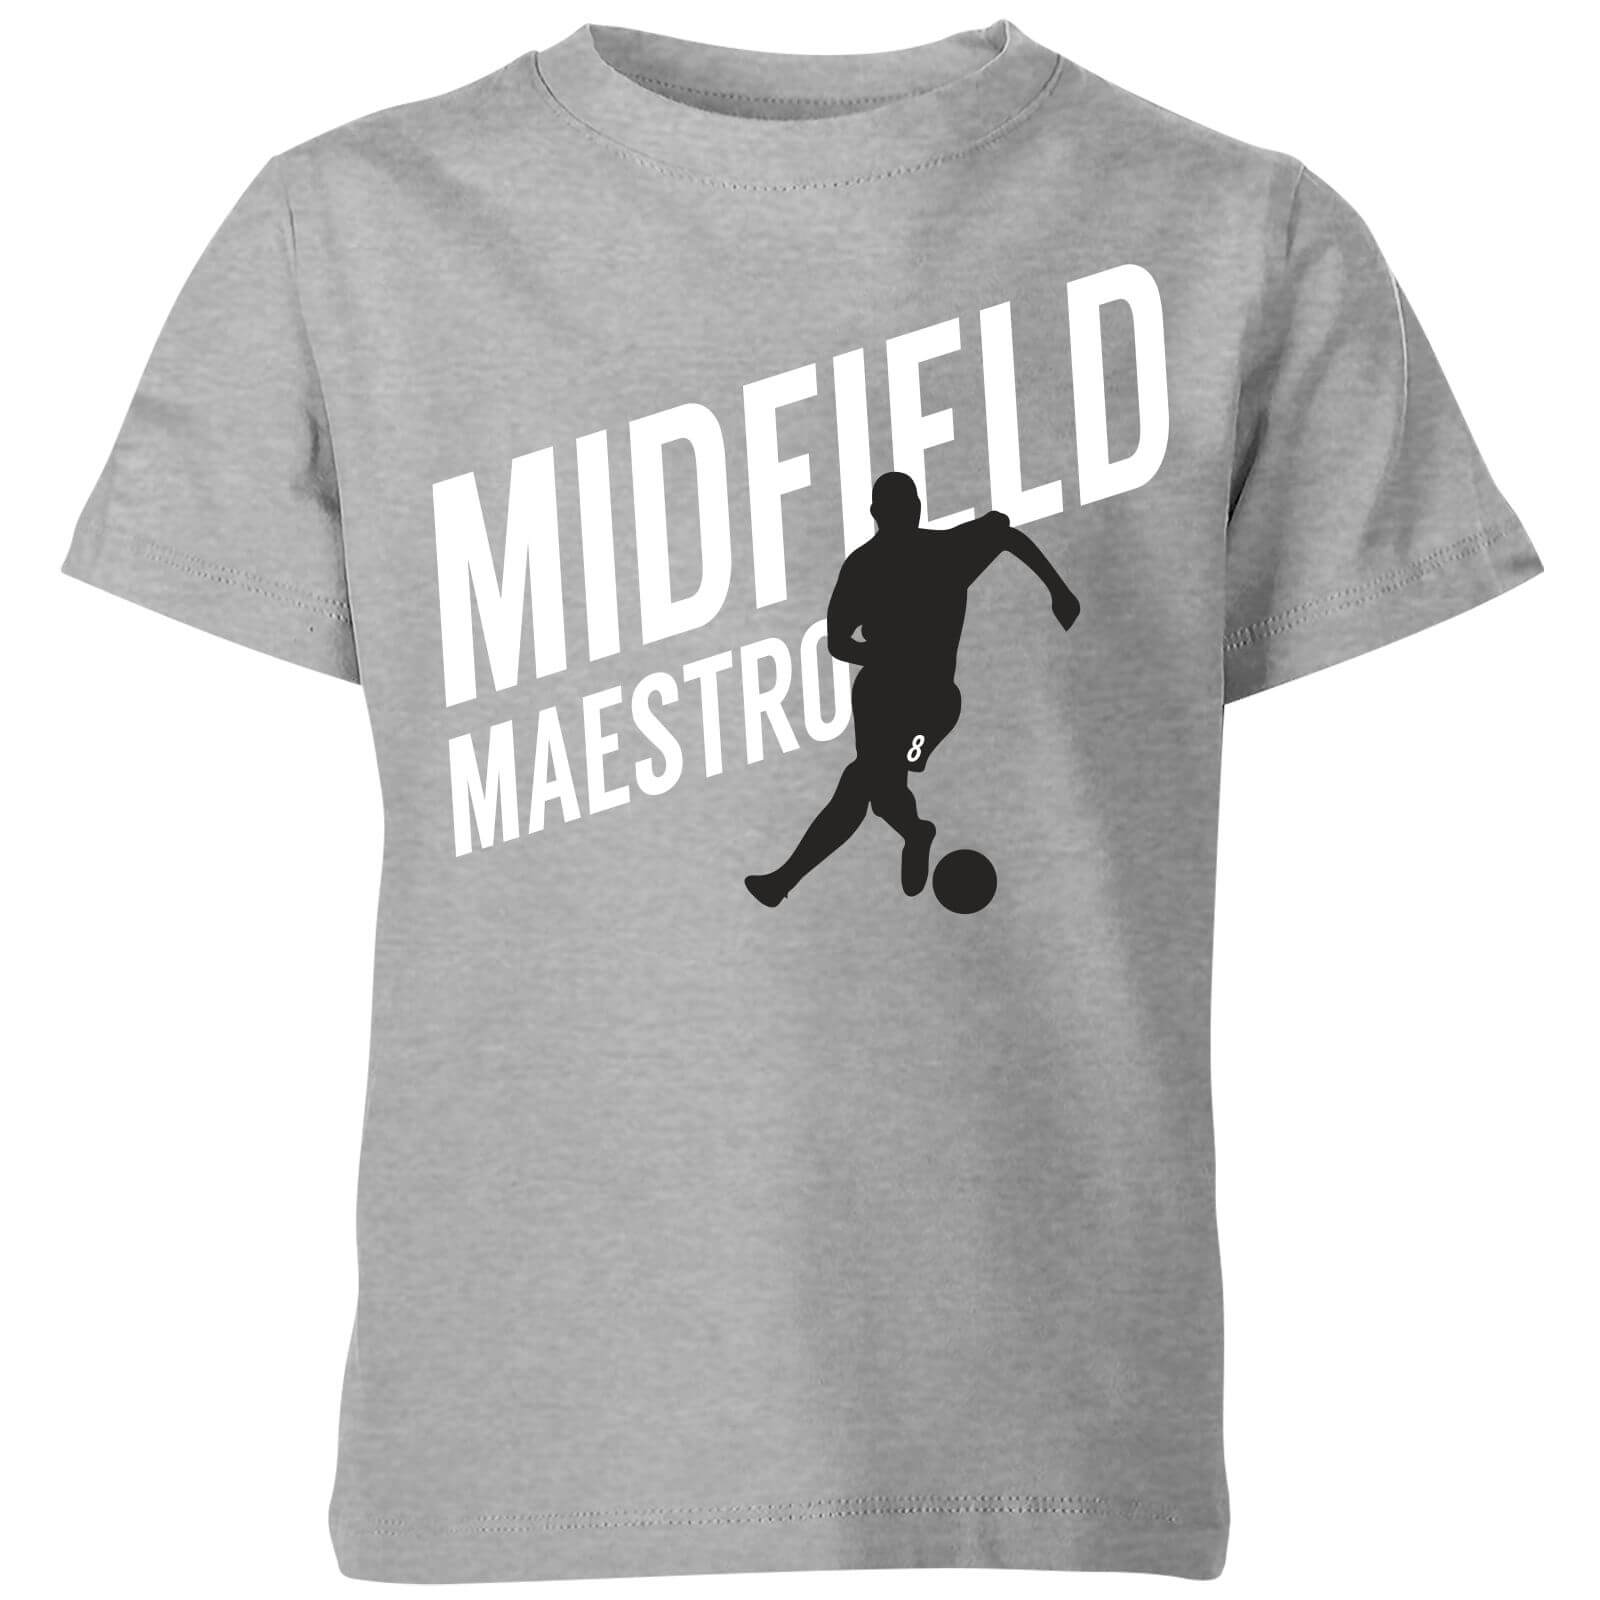 Midfield Maestro Kids' T-Shirt - Grey - 5-6 Years